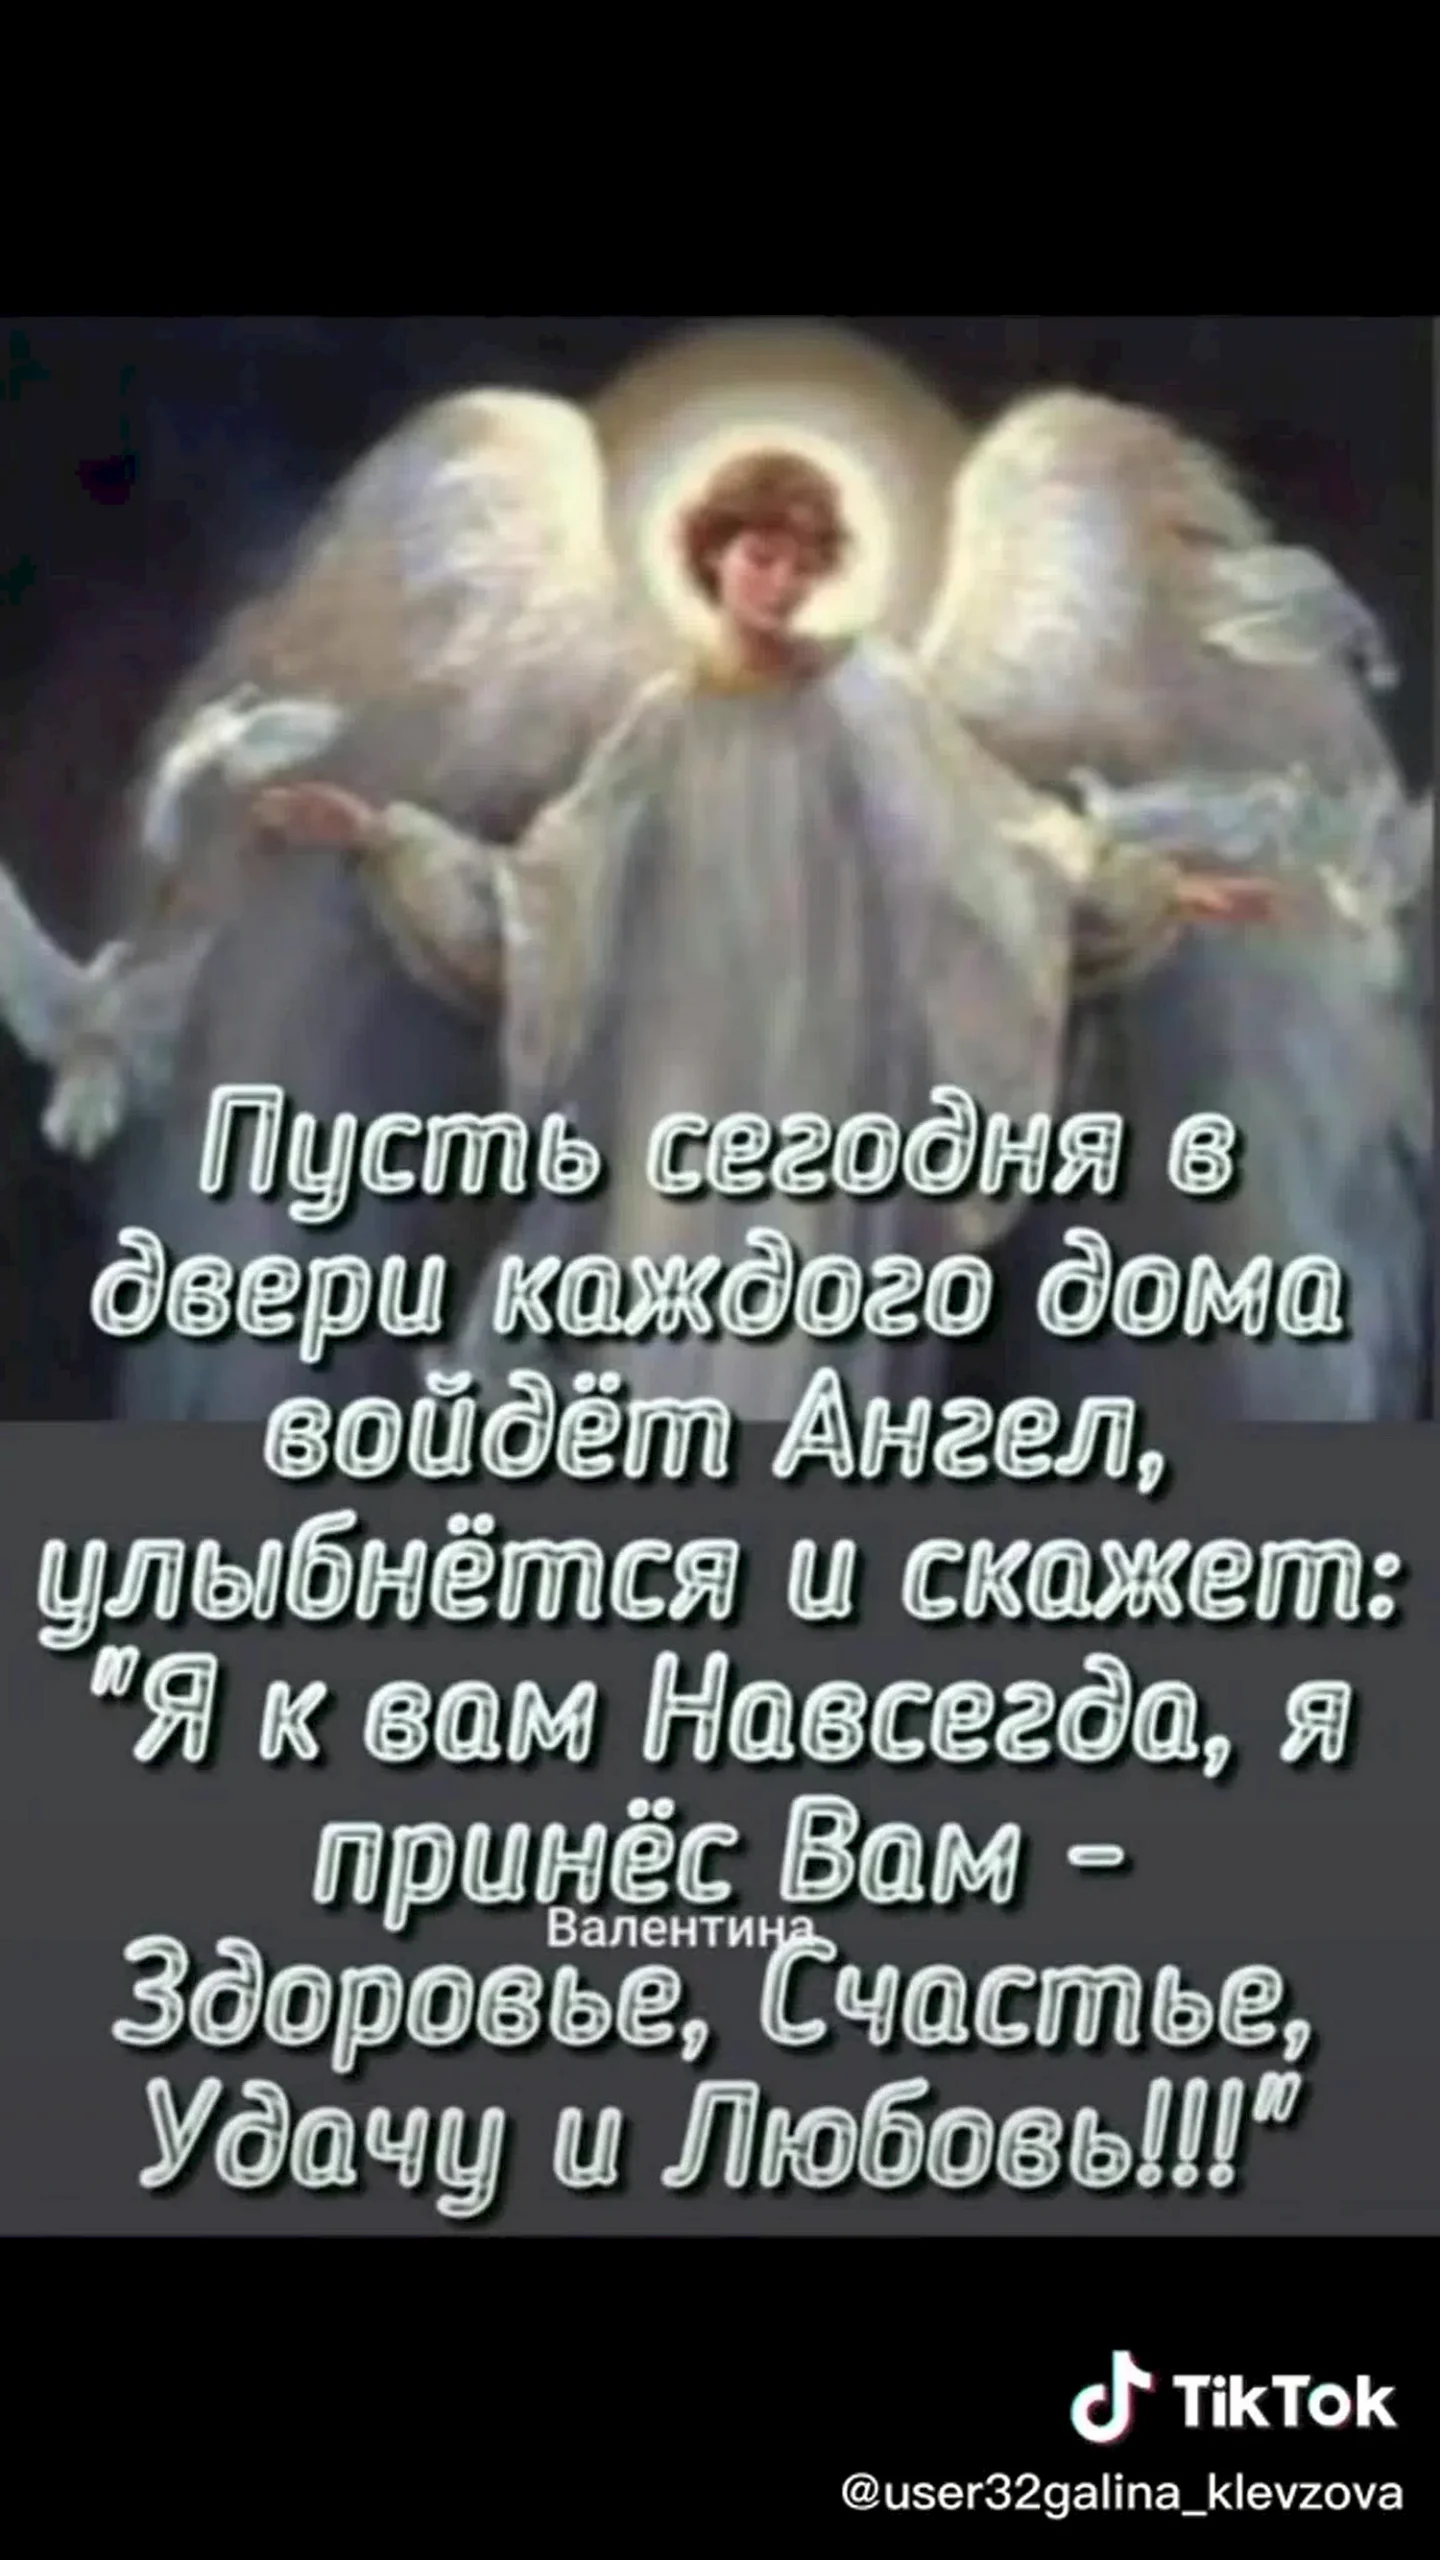 Ангела хранителя вам